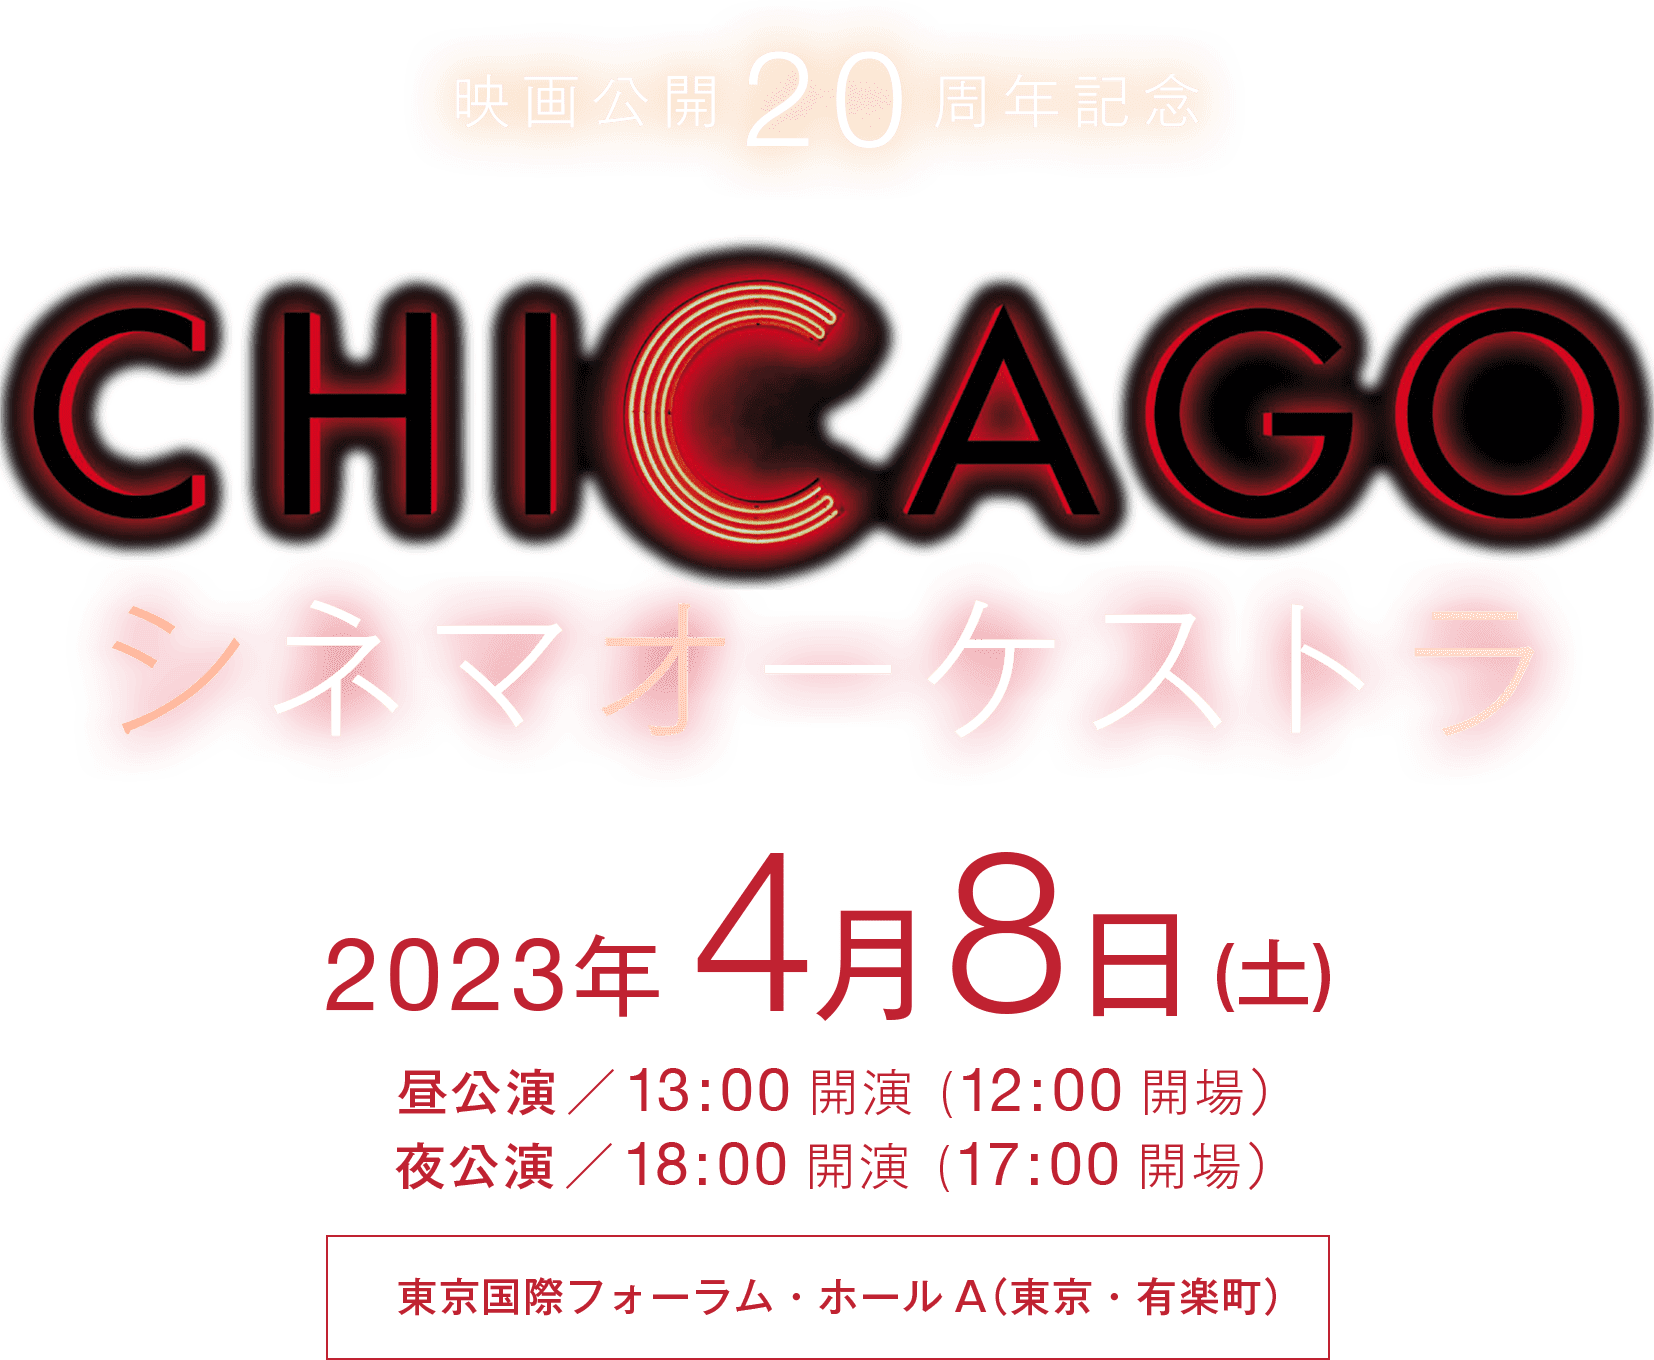 映画公開20周年記念「CHICAGO」シネマオーケストラ